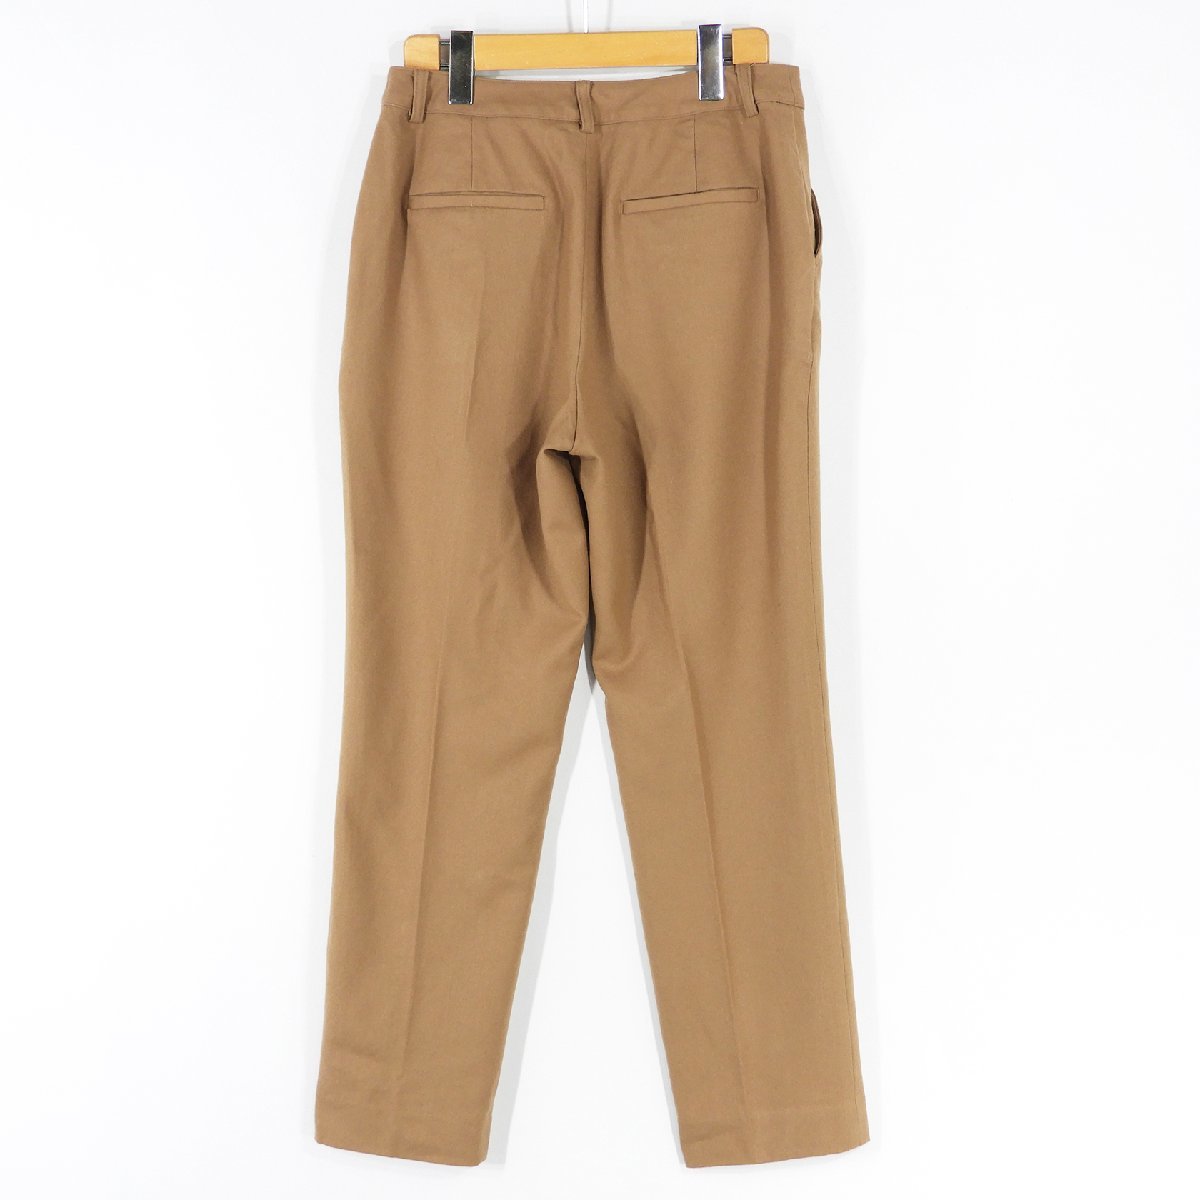 J.PRESS J Press wool slacks pants beige Size 11 #17029 J Press beautiful . trad casual 